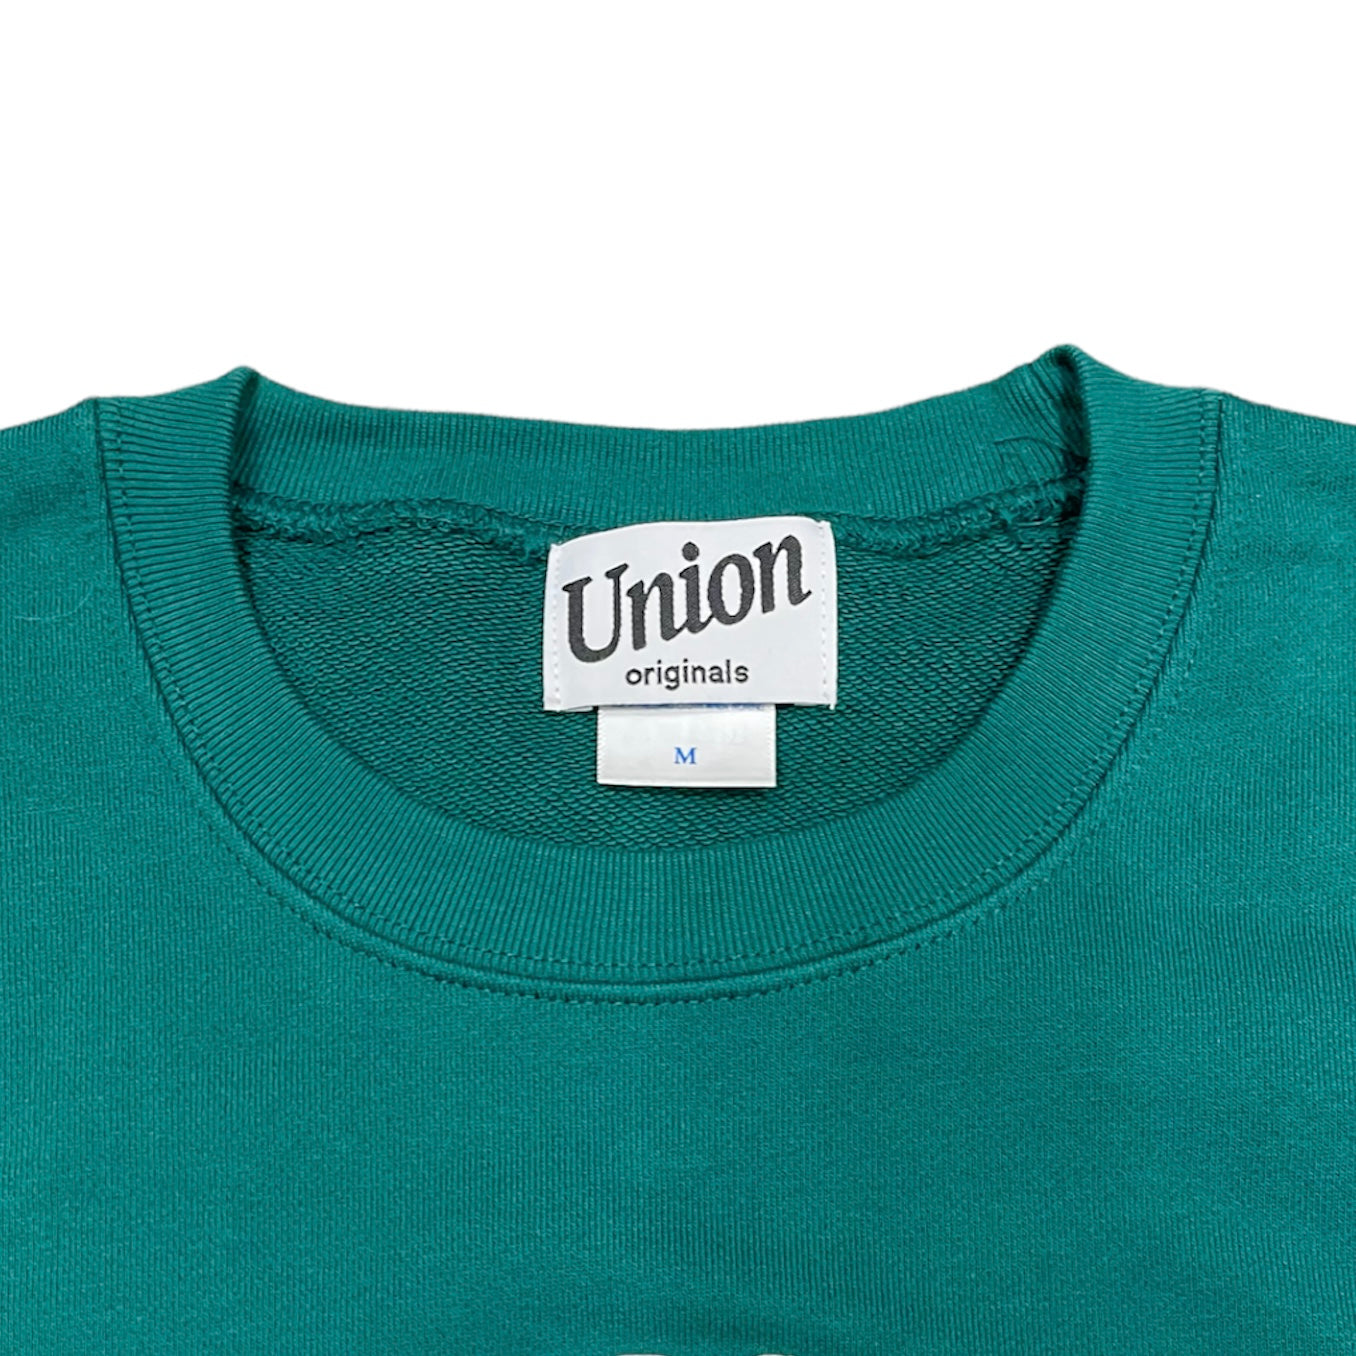 【UNION originals - ユニオンオリジナルス】UNION Classics Love Sweat / Green (スウェット/グリーン)